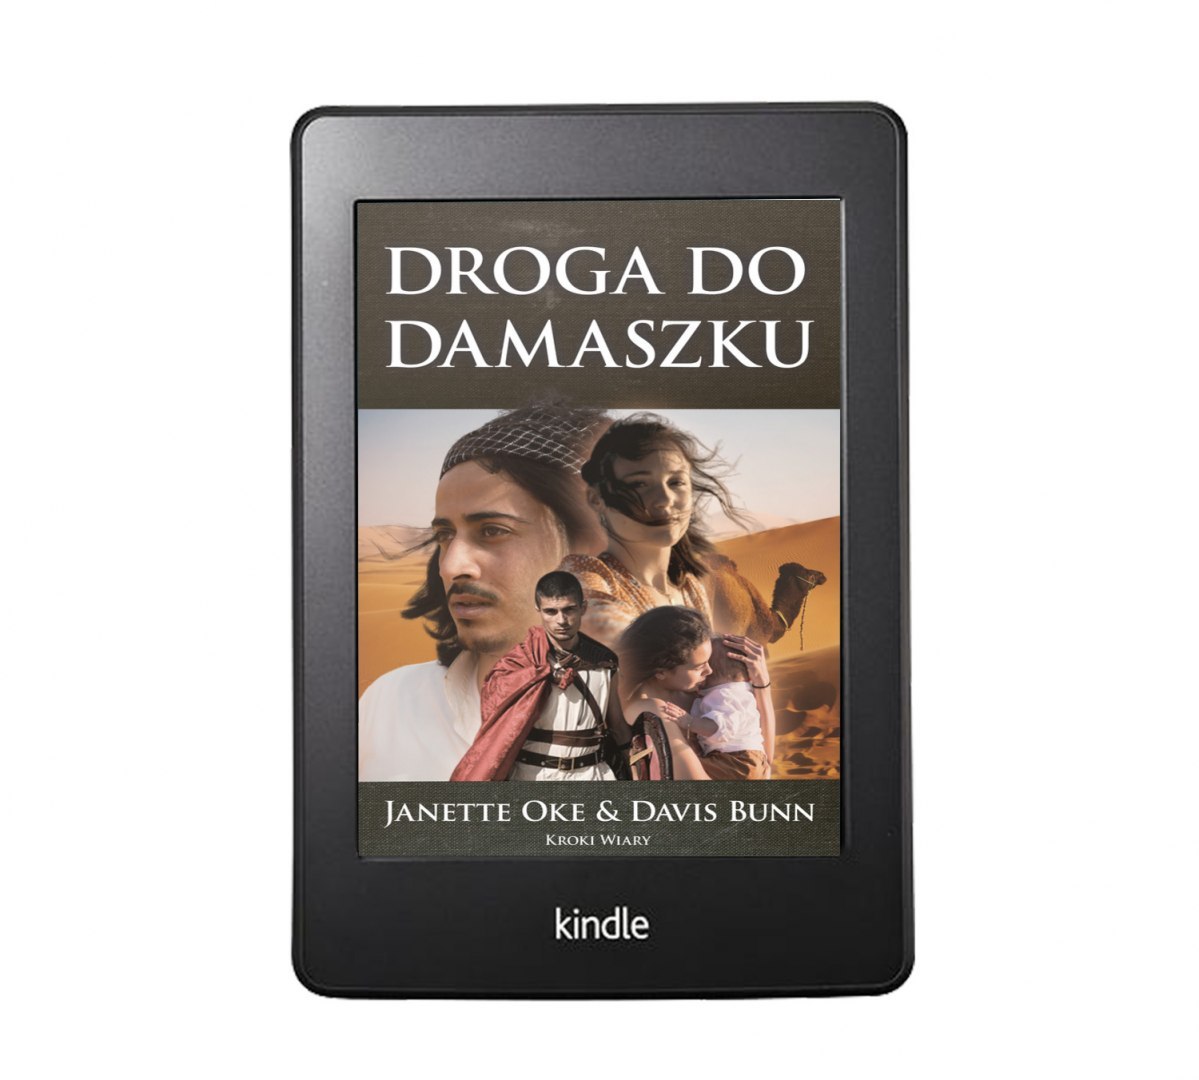 Ebook: DROGA DO DAMASZKU (tom 3 Śledztwo Setnika) - Janette Oke & Davis Bunn [MOBI/EPUB)